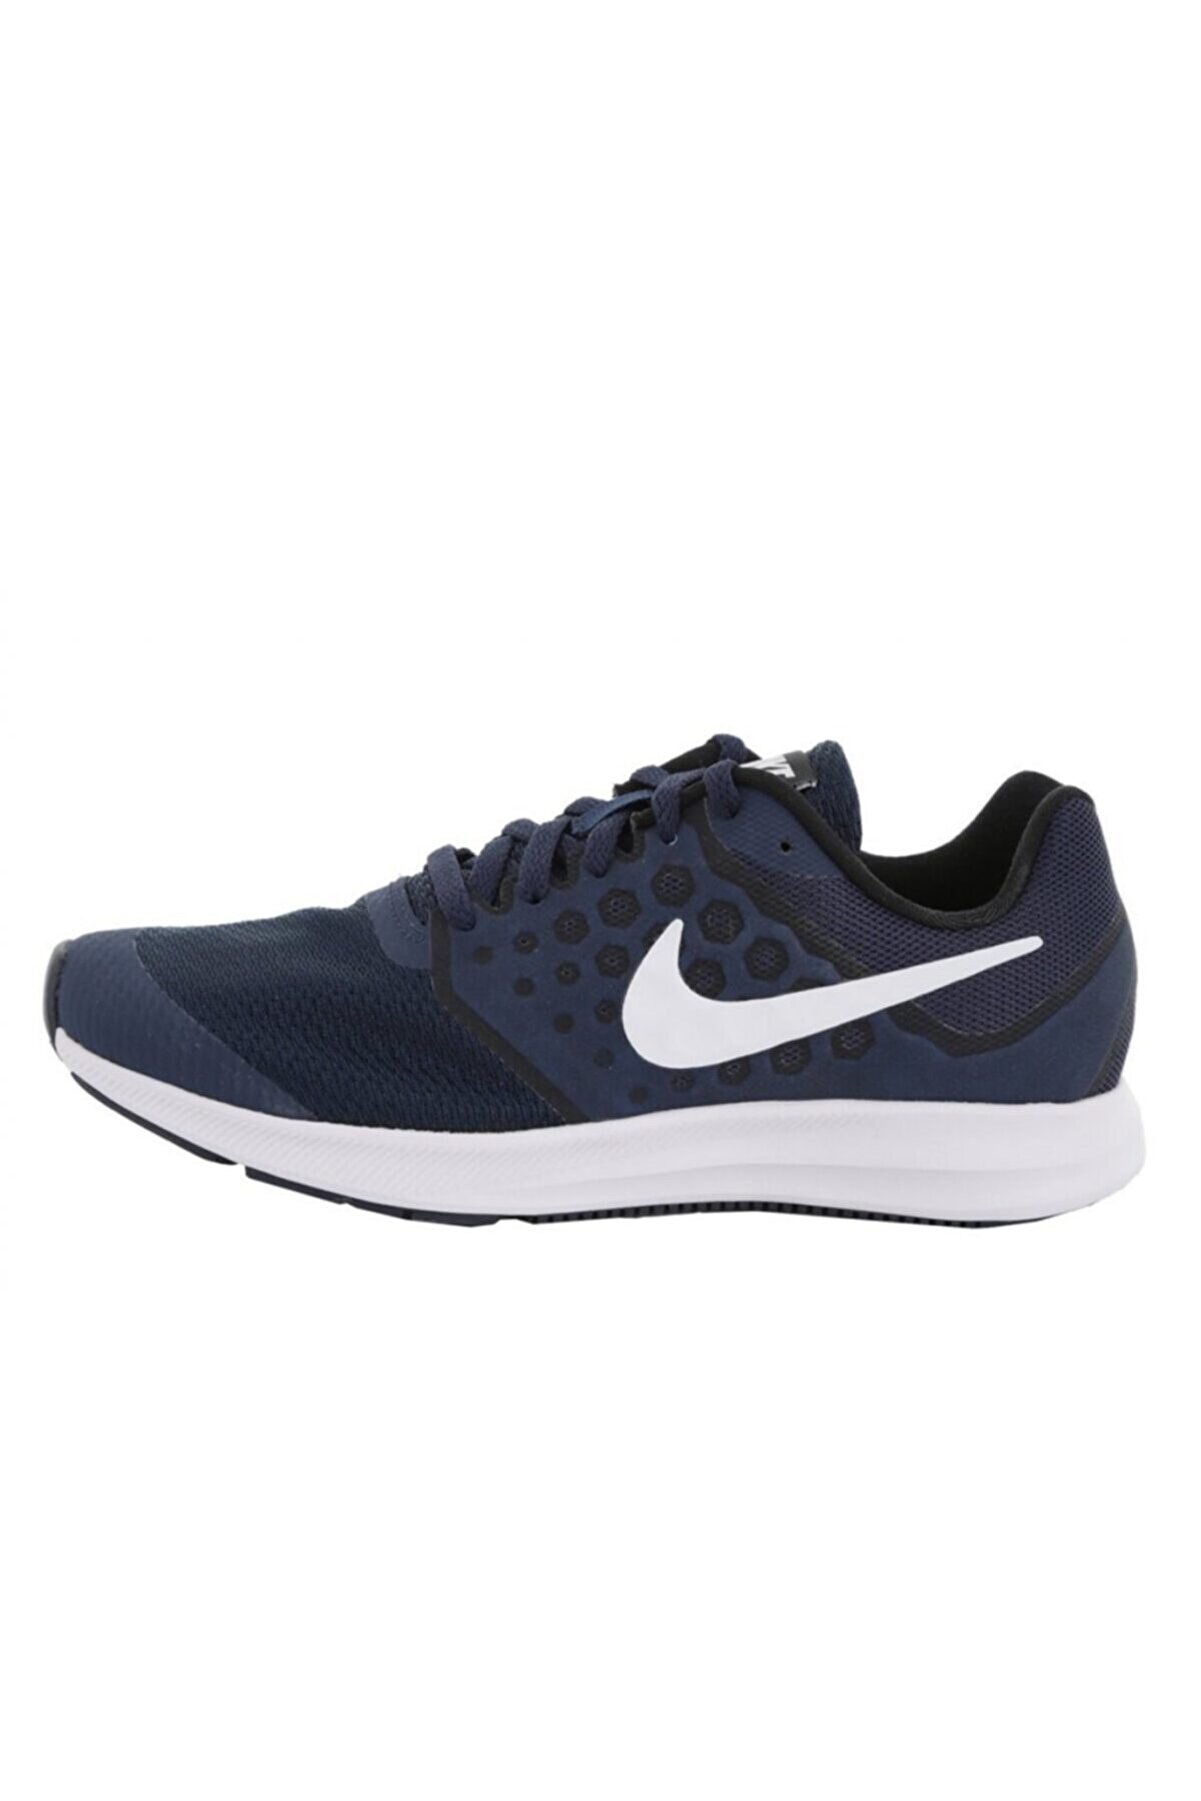 Nike 869969-400 Downshıfter 7 Kadın Koşu Ayakkabı